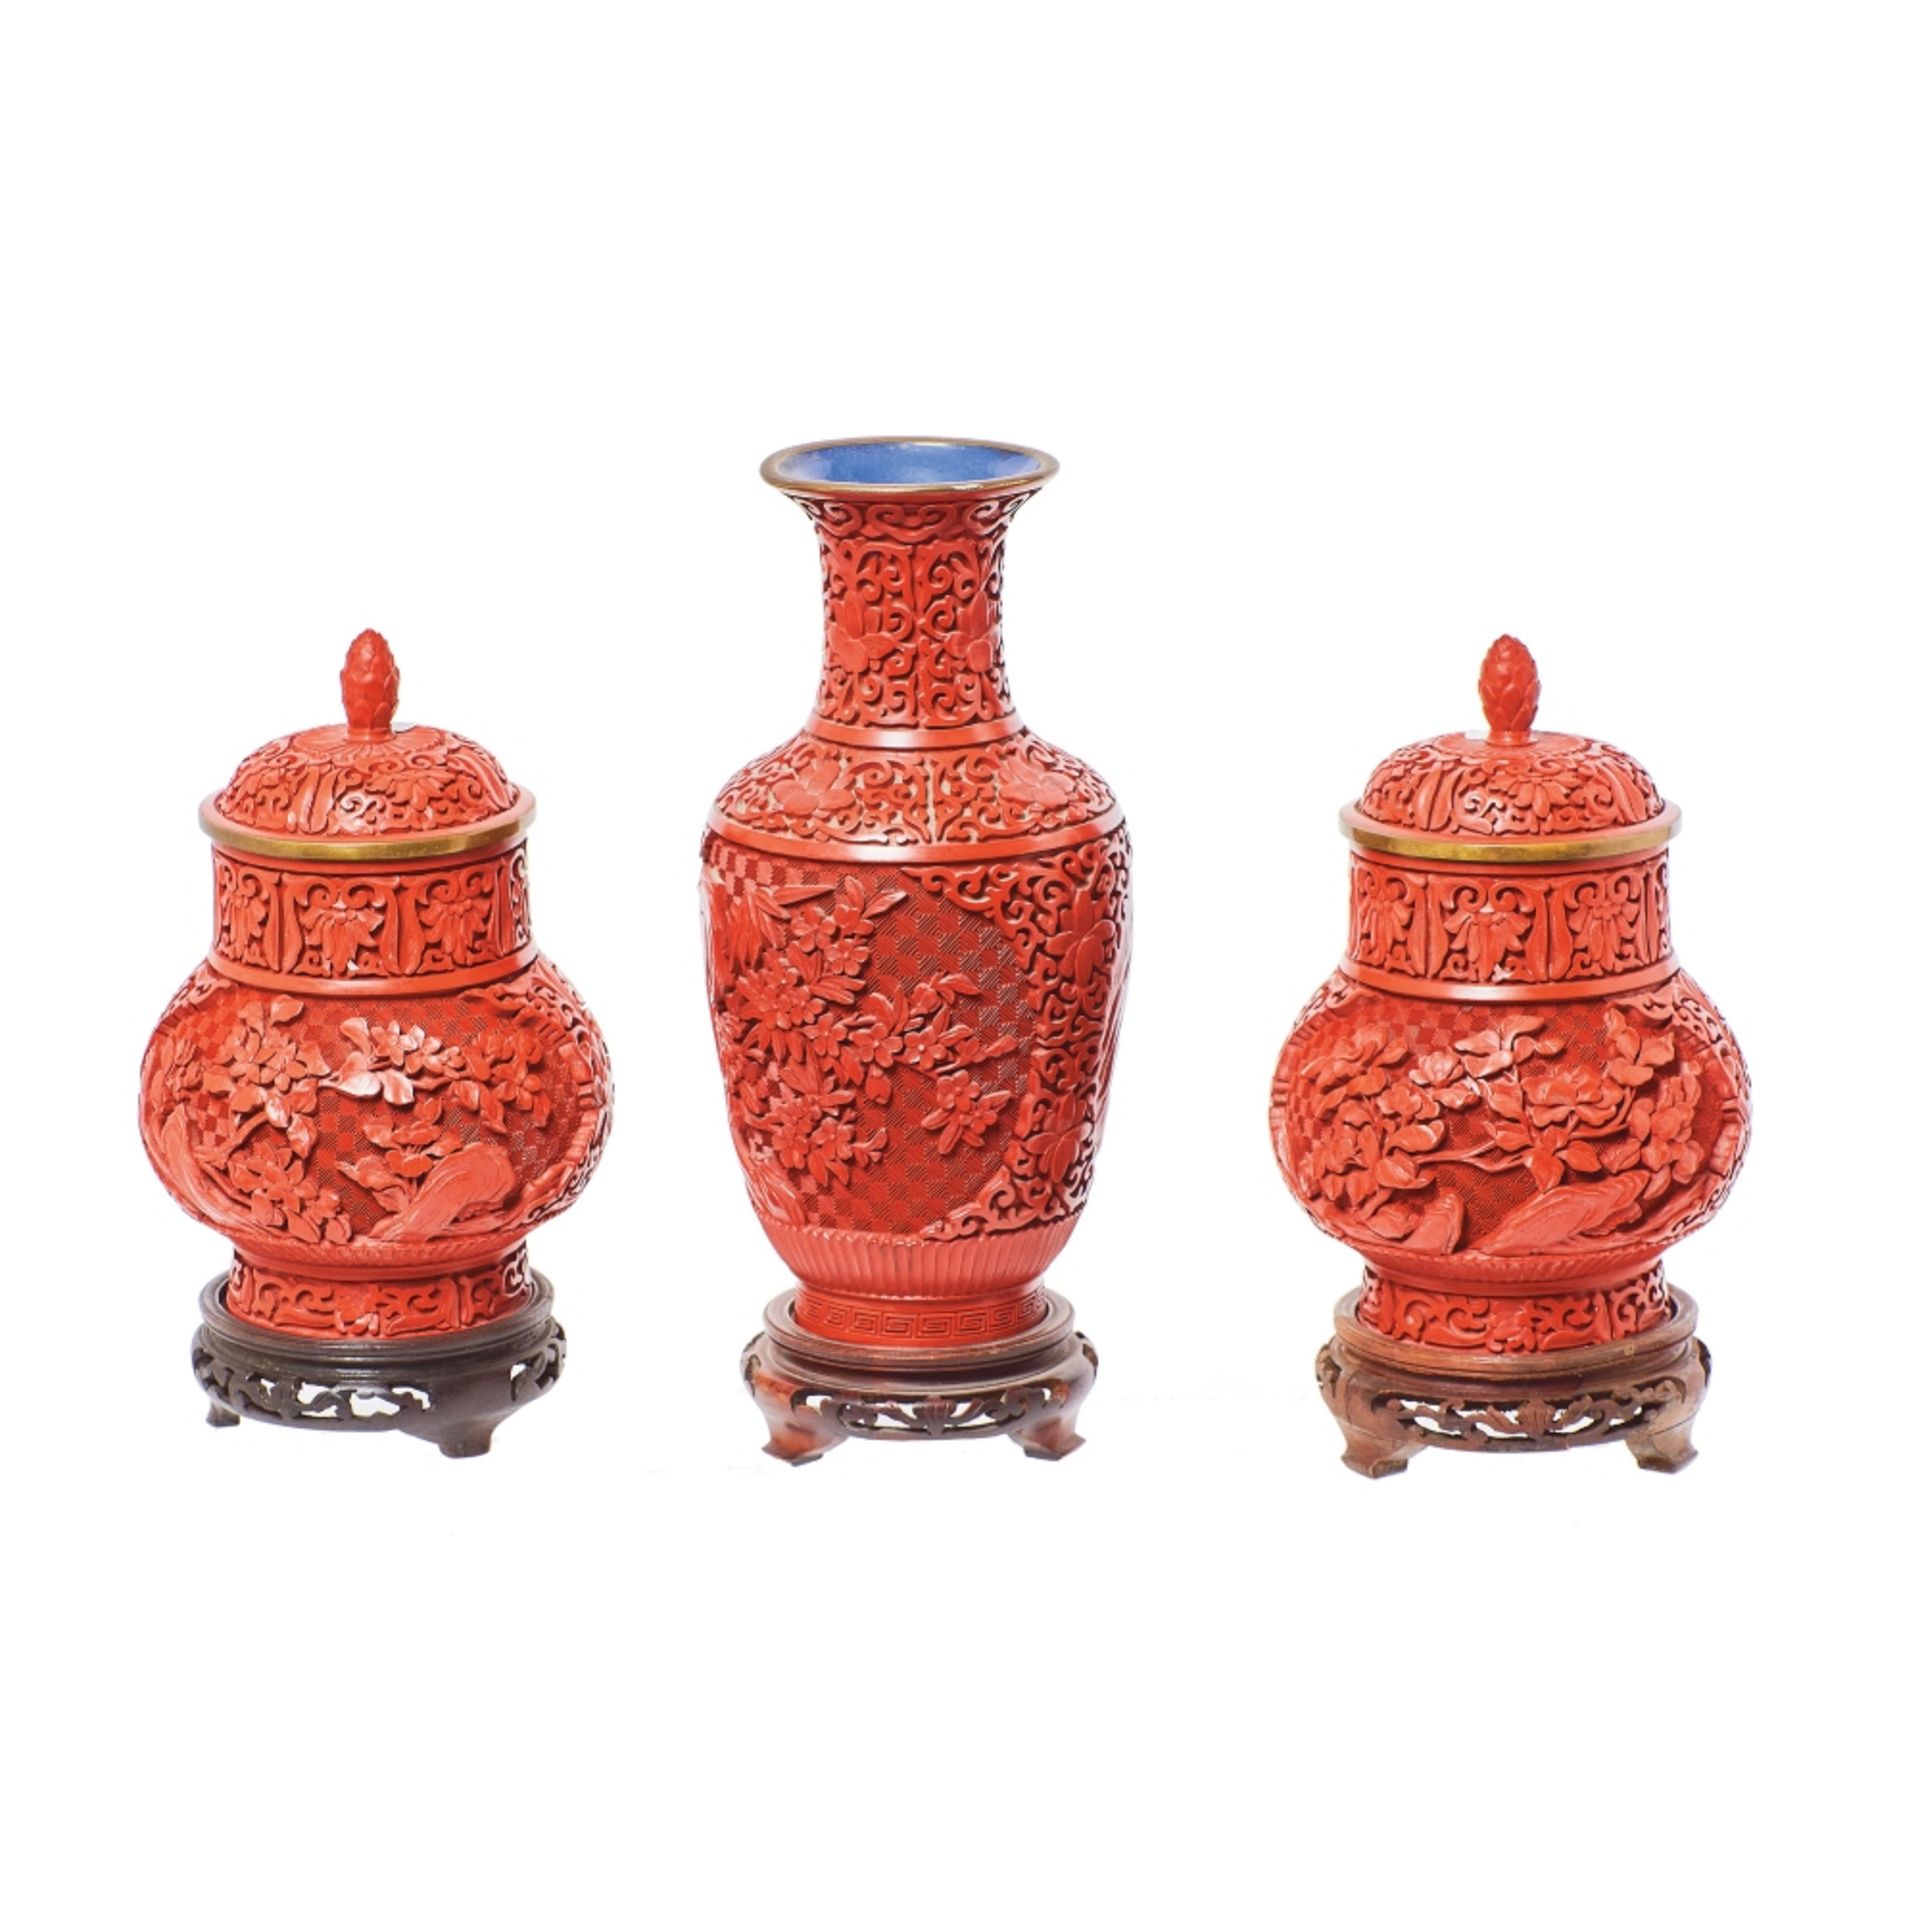 Lote de jarrón y pareja de tibores chinos en laca roja tallada.